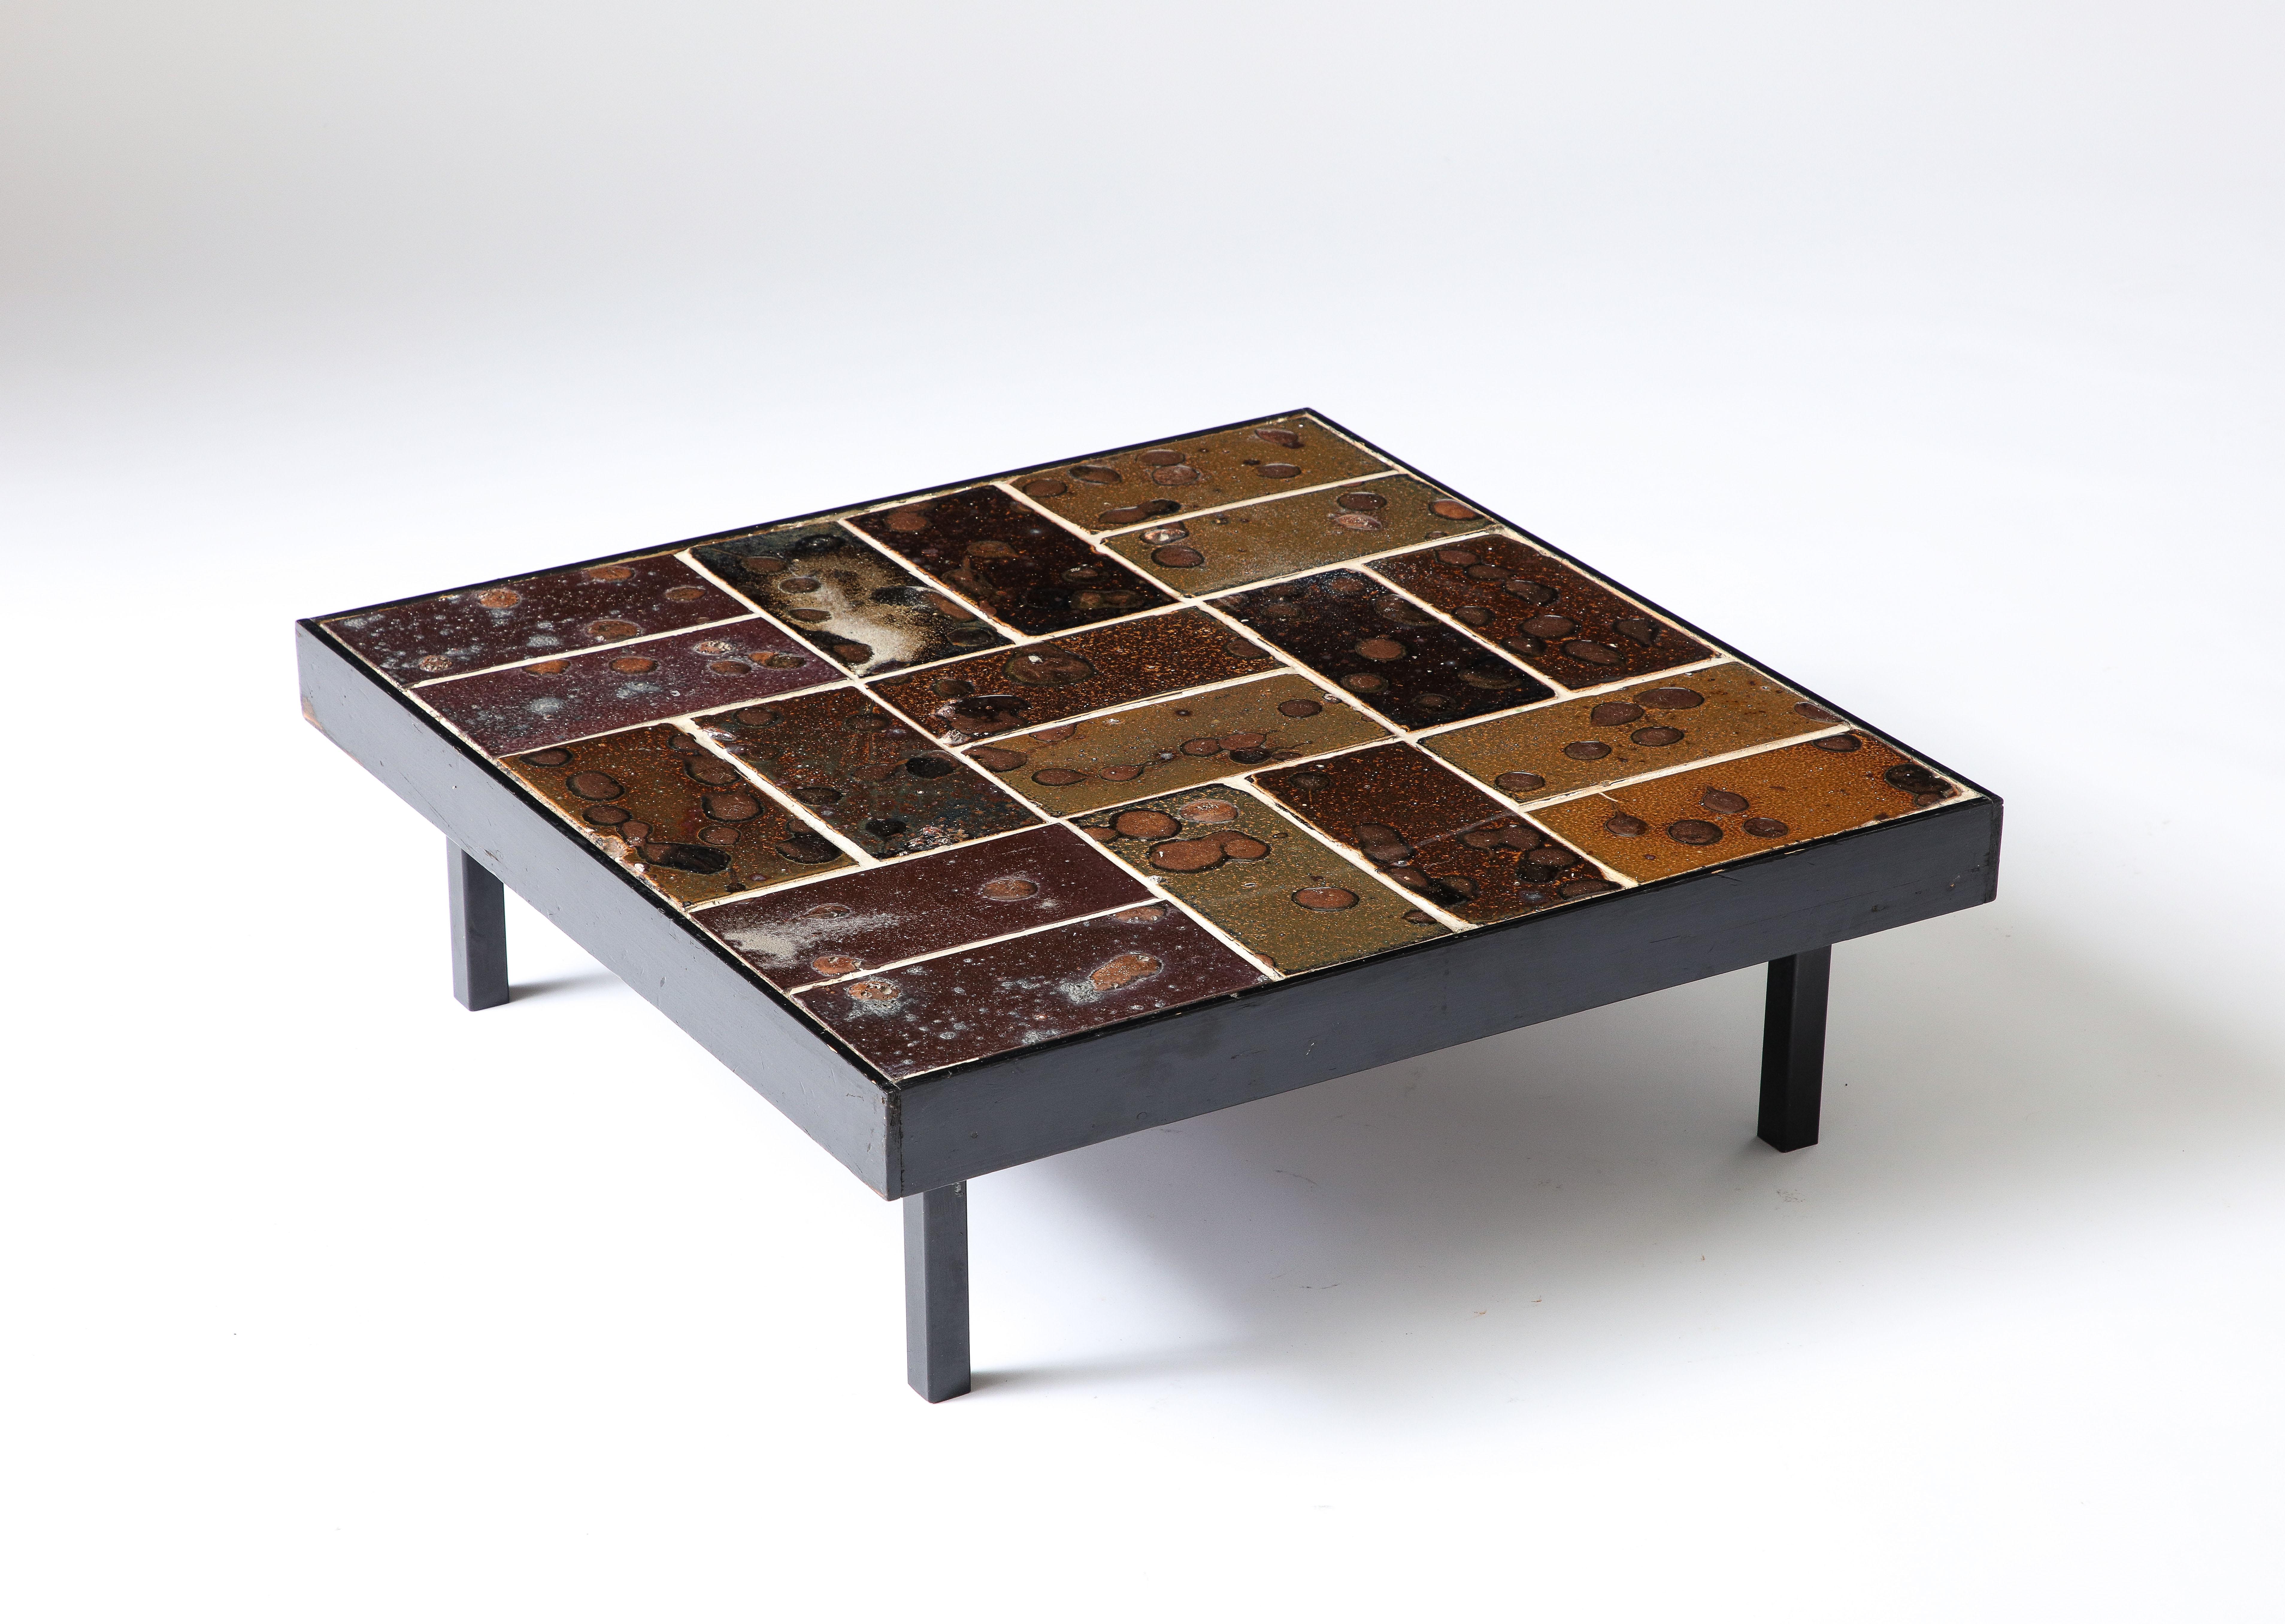 Dieser Tisch besteht aus glasierten Keramikfliesen mit viel Textur und unterschiedlichen Farbtönen. Ein solides, auffälliges Stück.